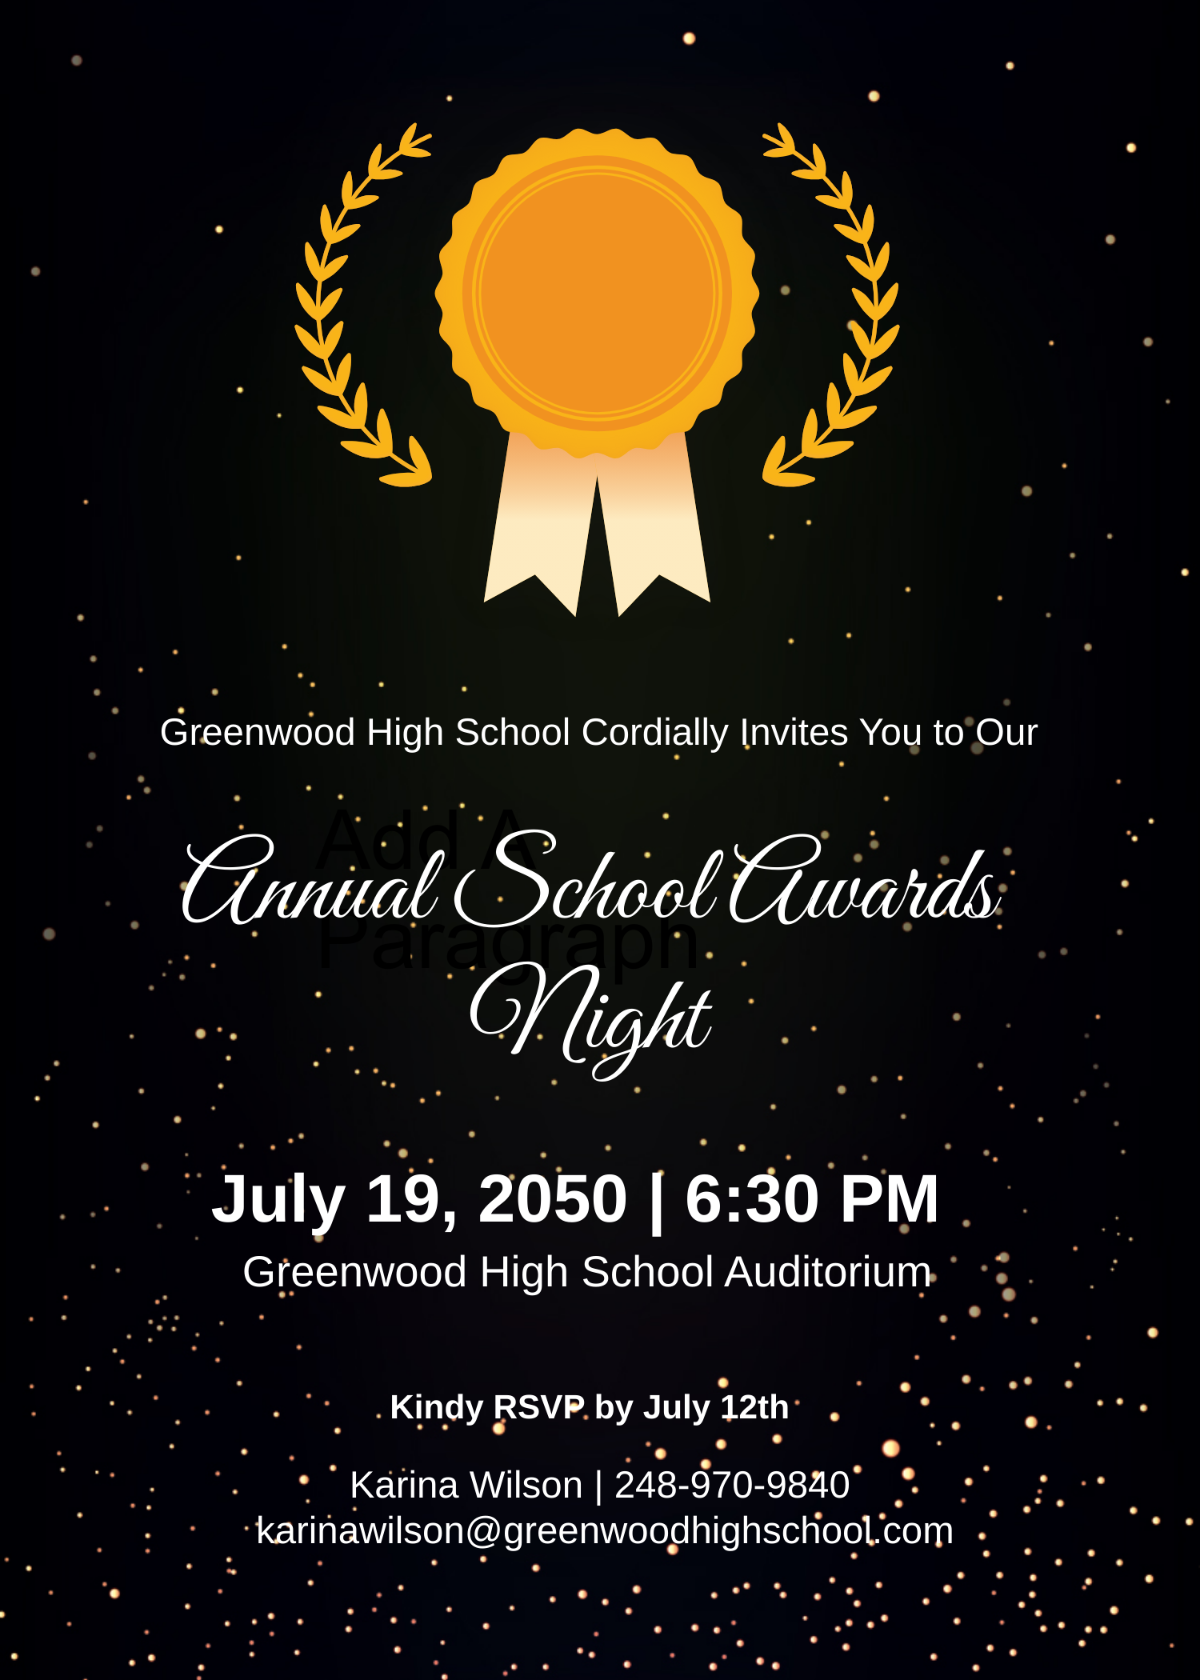 School Awards Night Invitation